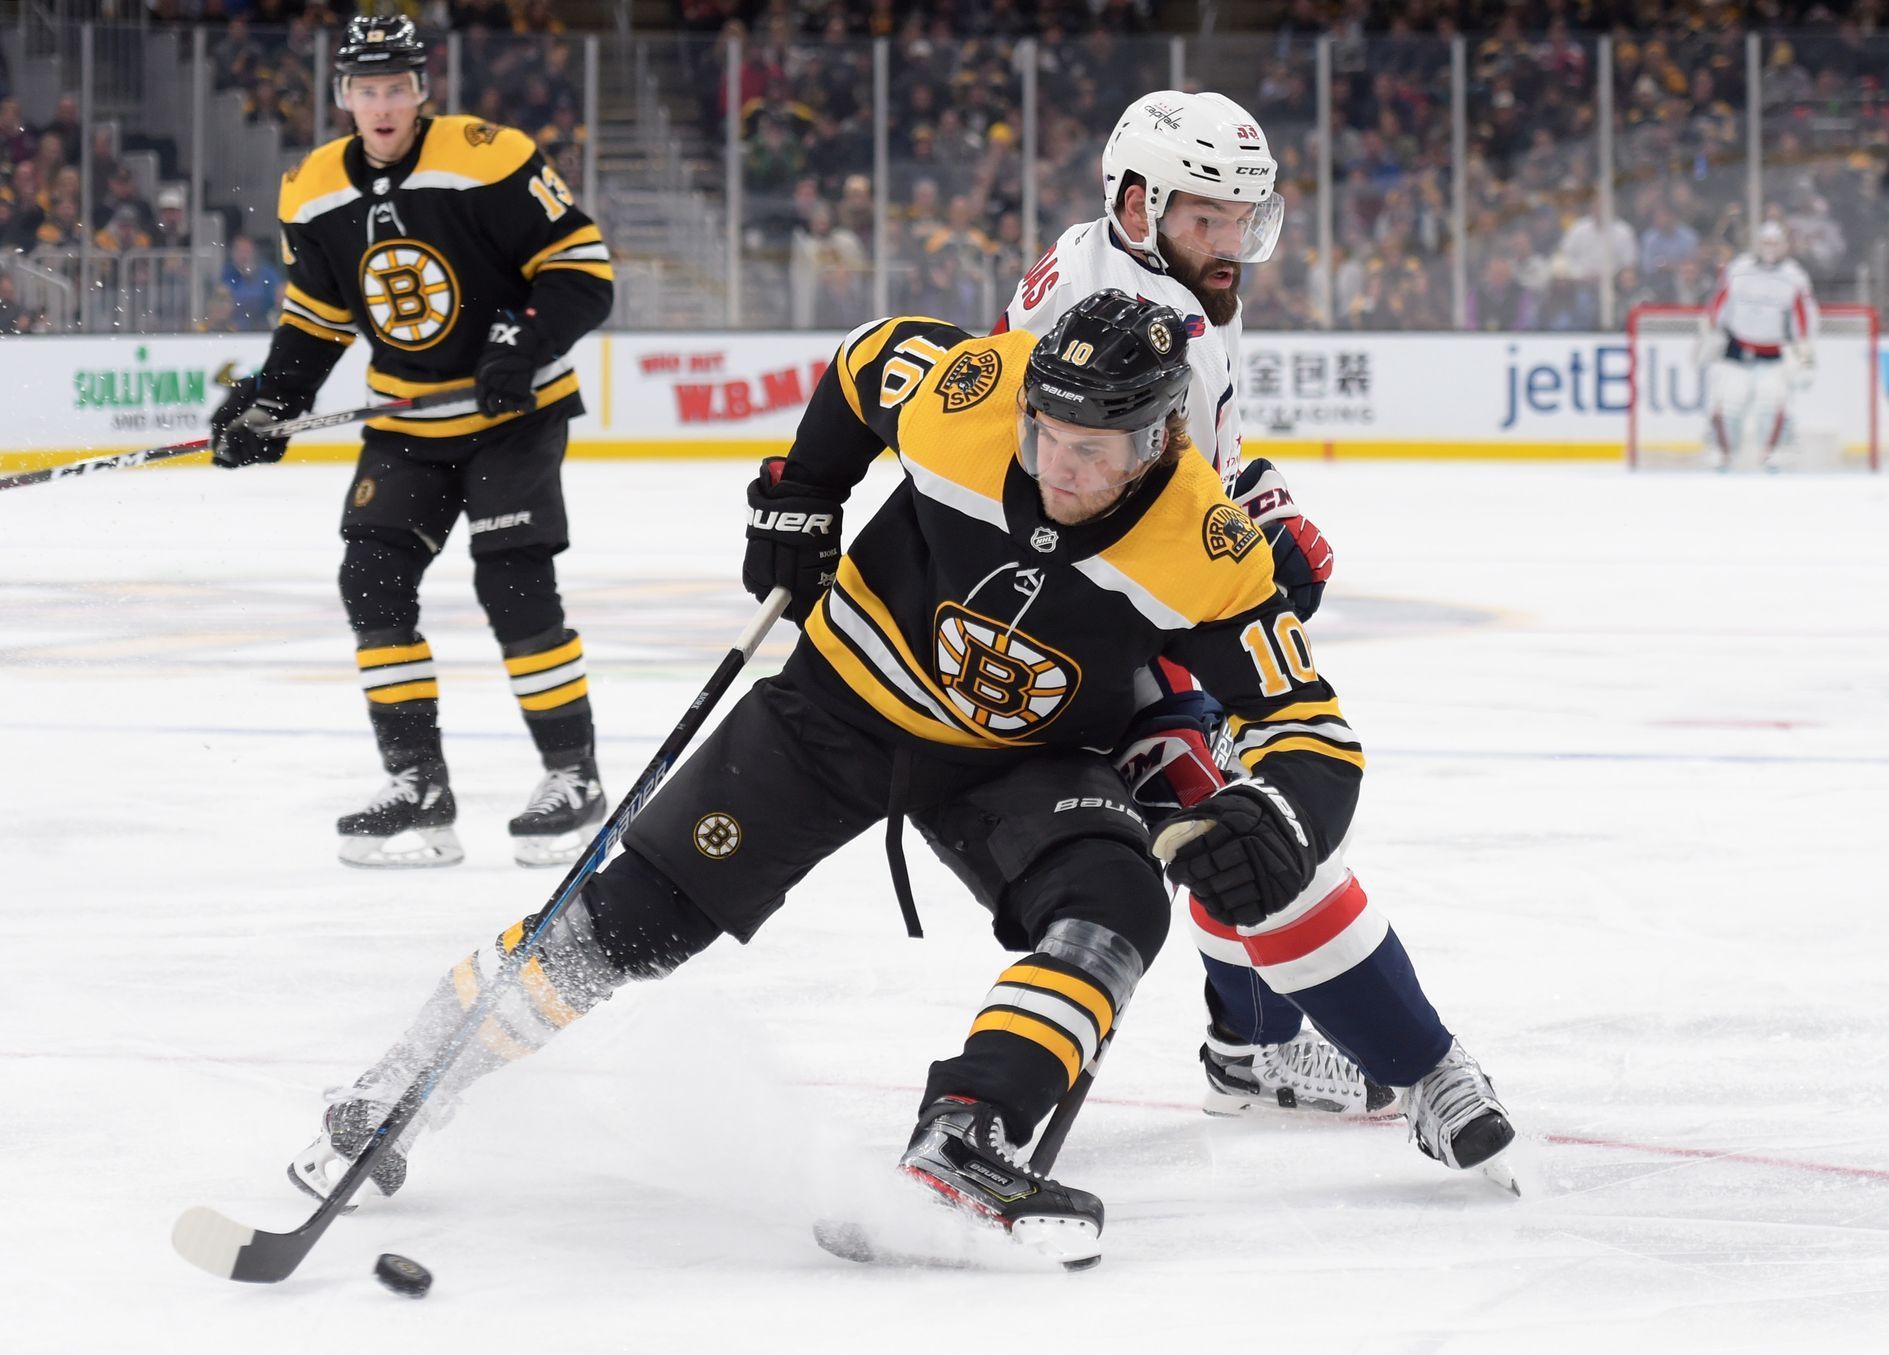 NHL 2019/20, Boston - Washington: Anders Bjork s pukem před Radkem Gudasem